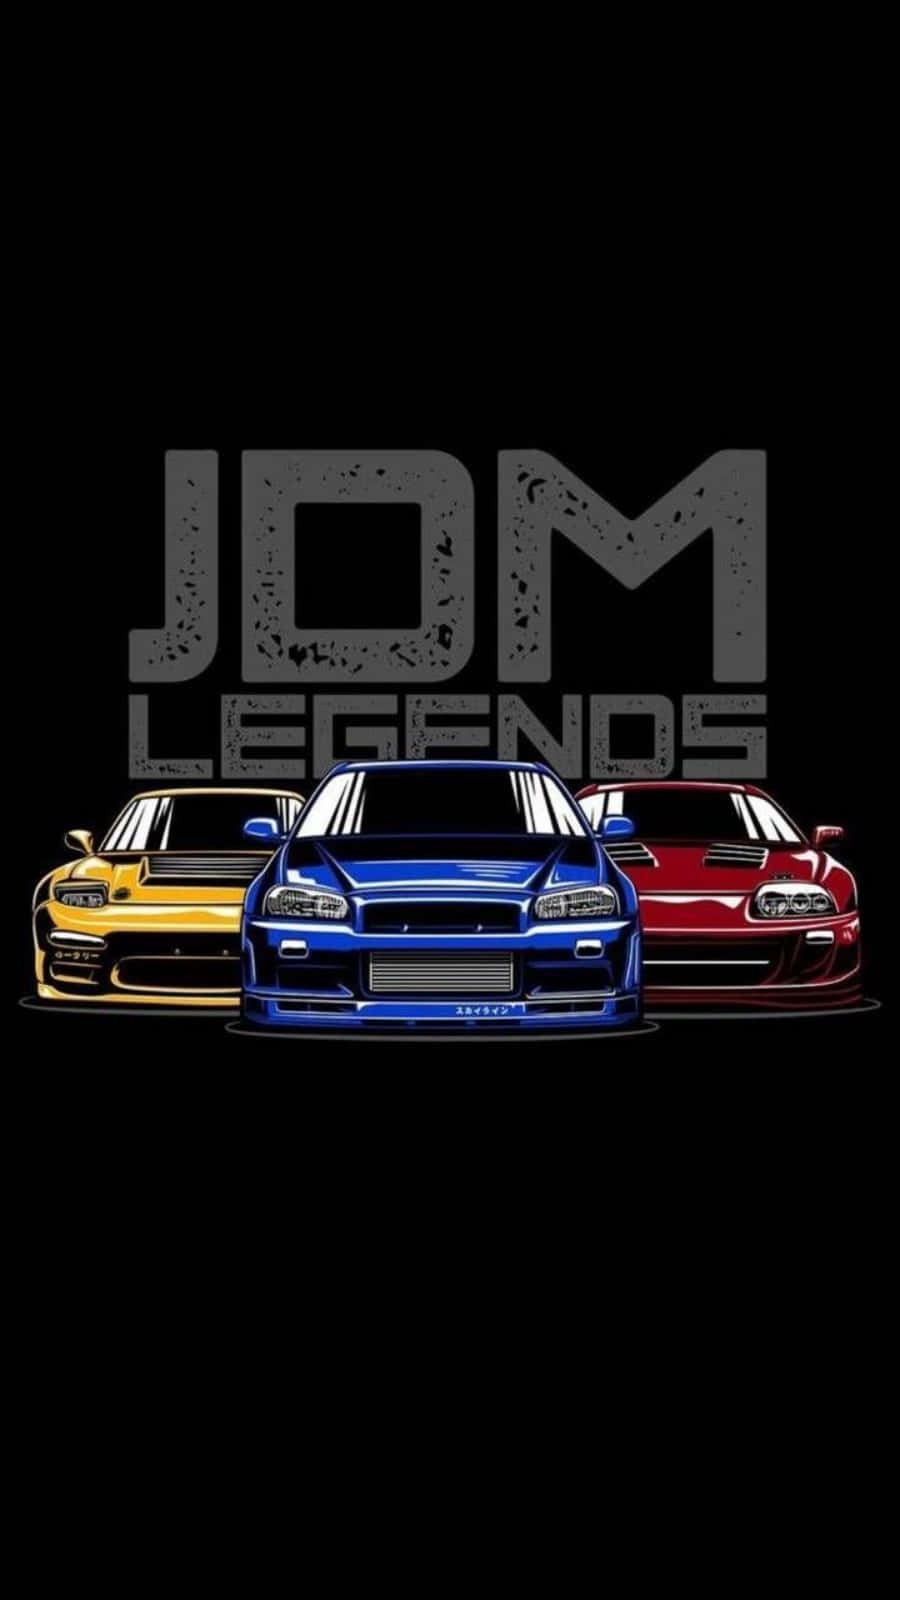 Jdmlegends - Jdm Legends - Jdm Legends Would Be Translated To: Jdm Legender - Jdm Legender - Jdm Legender. Wallpaper